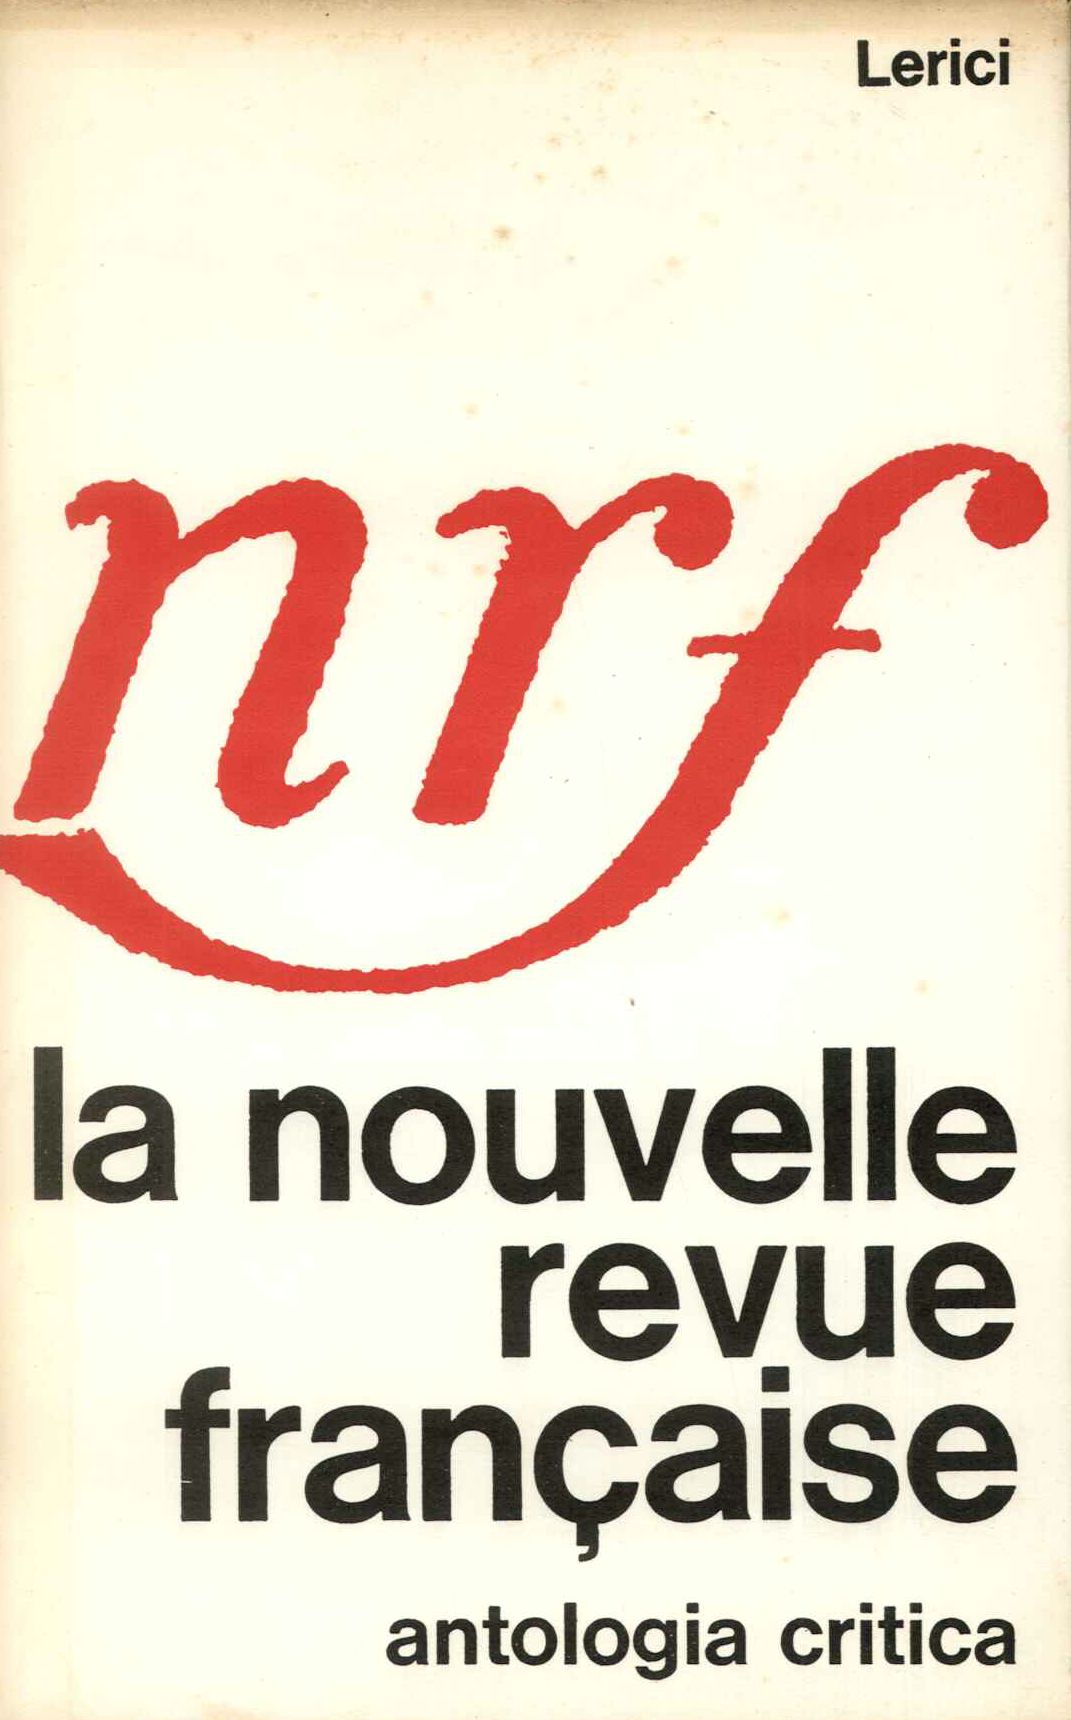 Nouvelle Revue Francaise. Antologia critica.